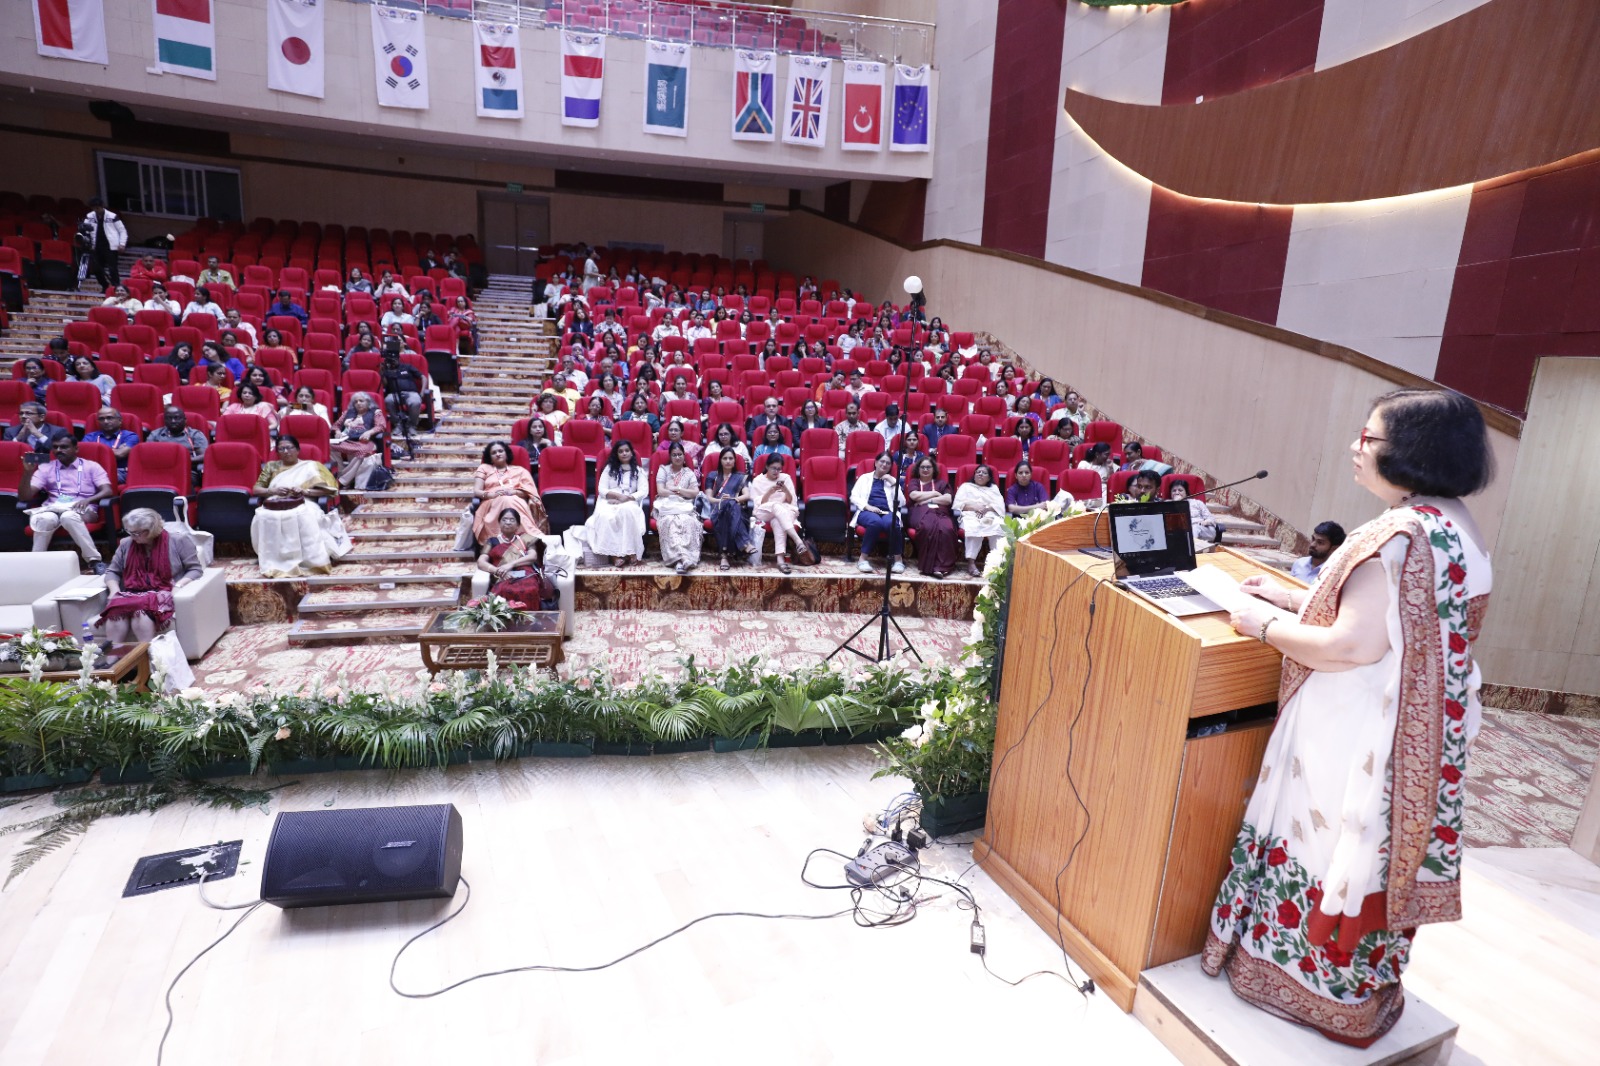 गर्भाशय ग्रीवा और एच. पी.वी से सम्बंधित जननांग कैंसर के वैश्विक उन्मूलन के उद्देश्य से आयोजित ’एओजिन-इंडिया’ के 12वें राष्ट्रीय सम्मेलन का शनिवार को एम्स ऋषिकेश में आगाज